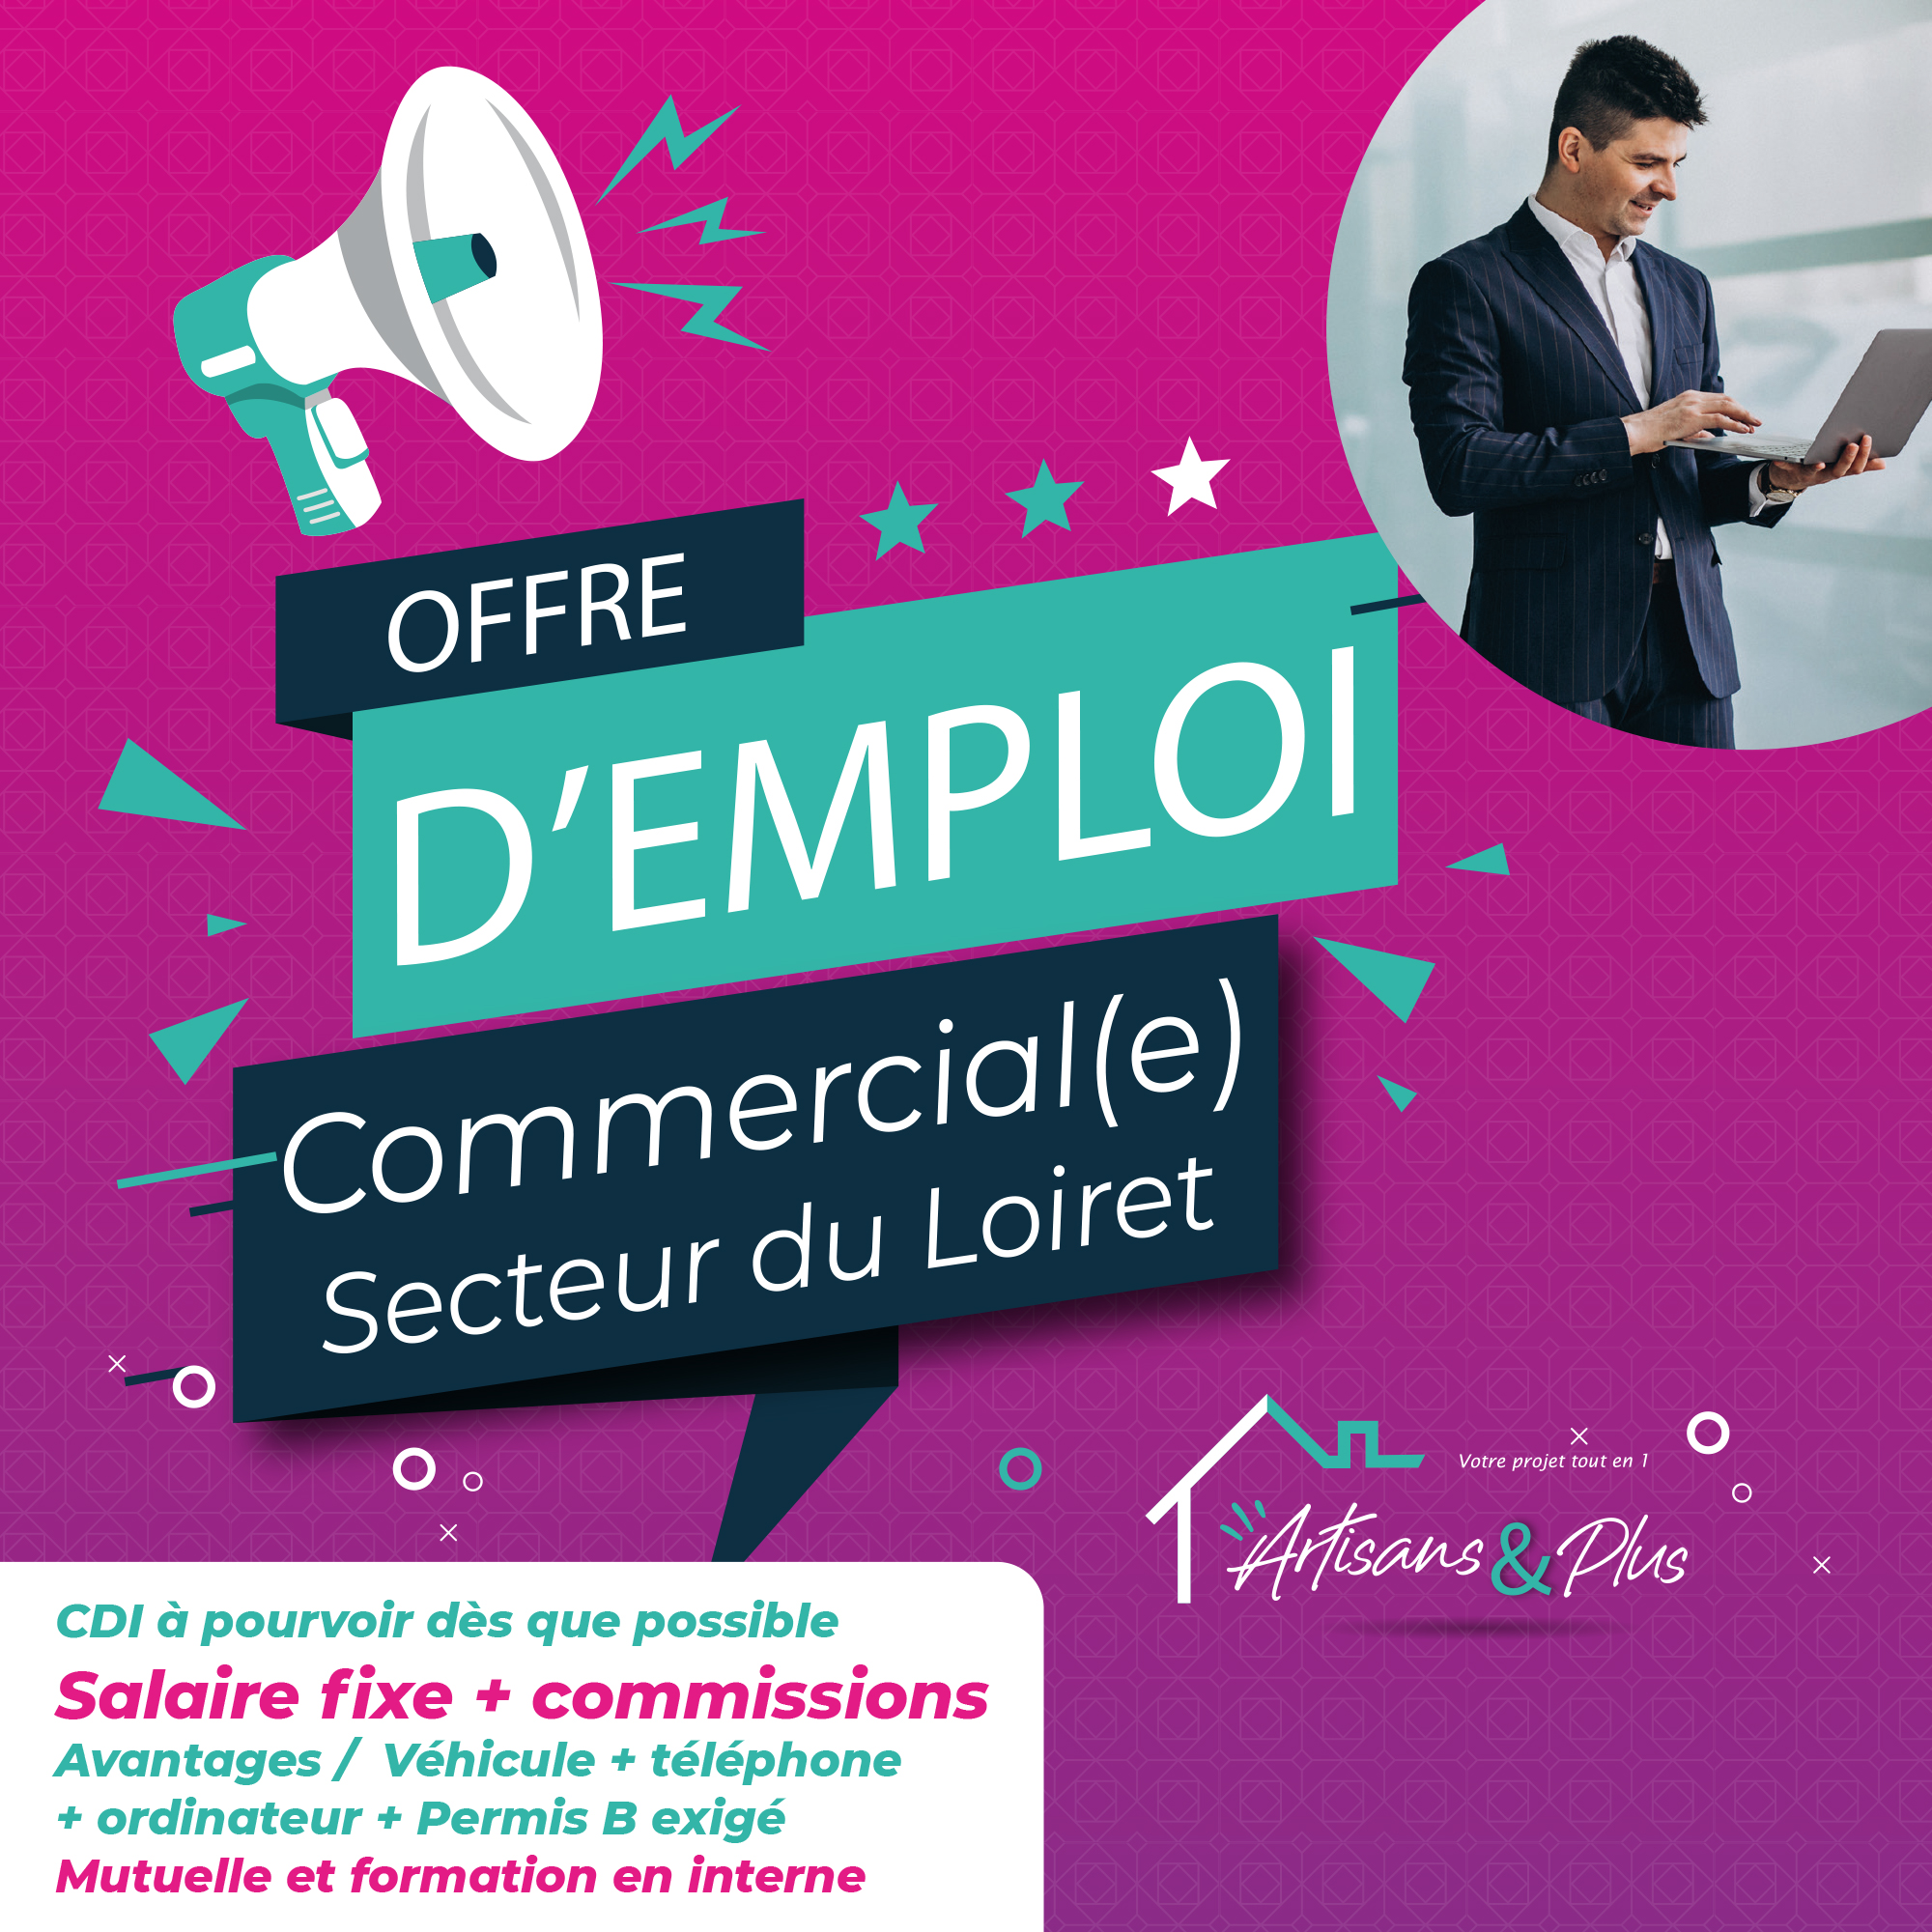 offre-emploi-04MAI-OFFRE-commercial-facebook-loiret